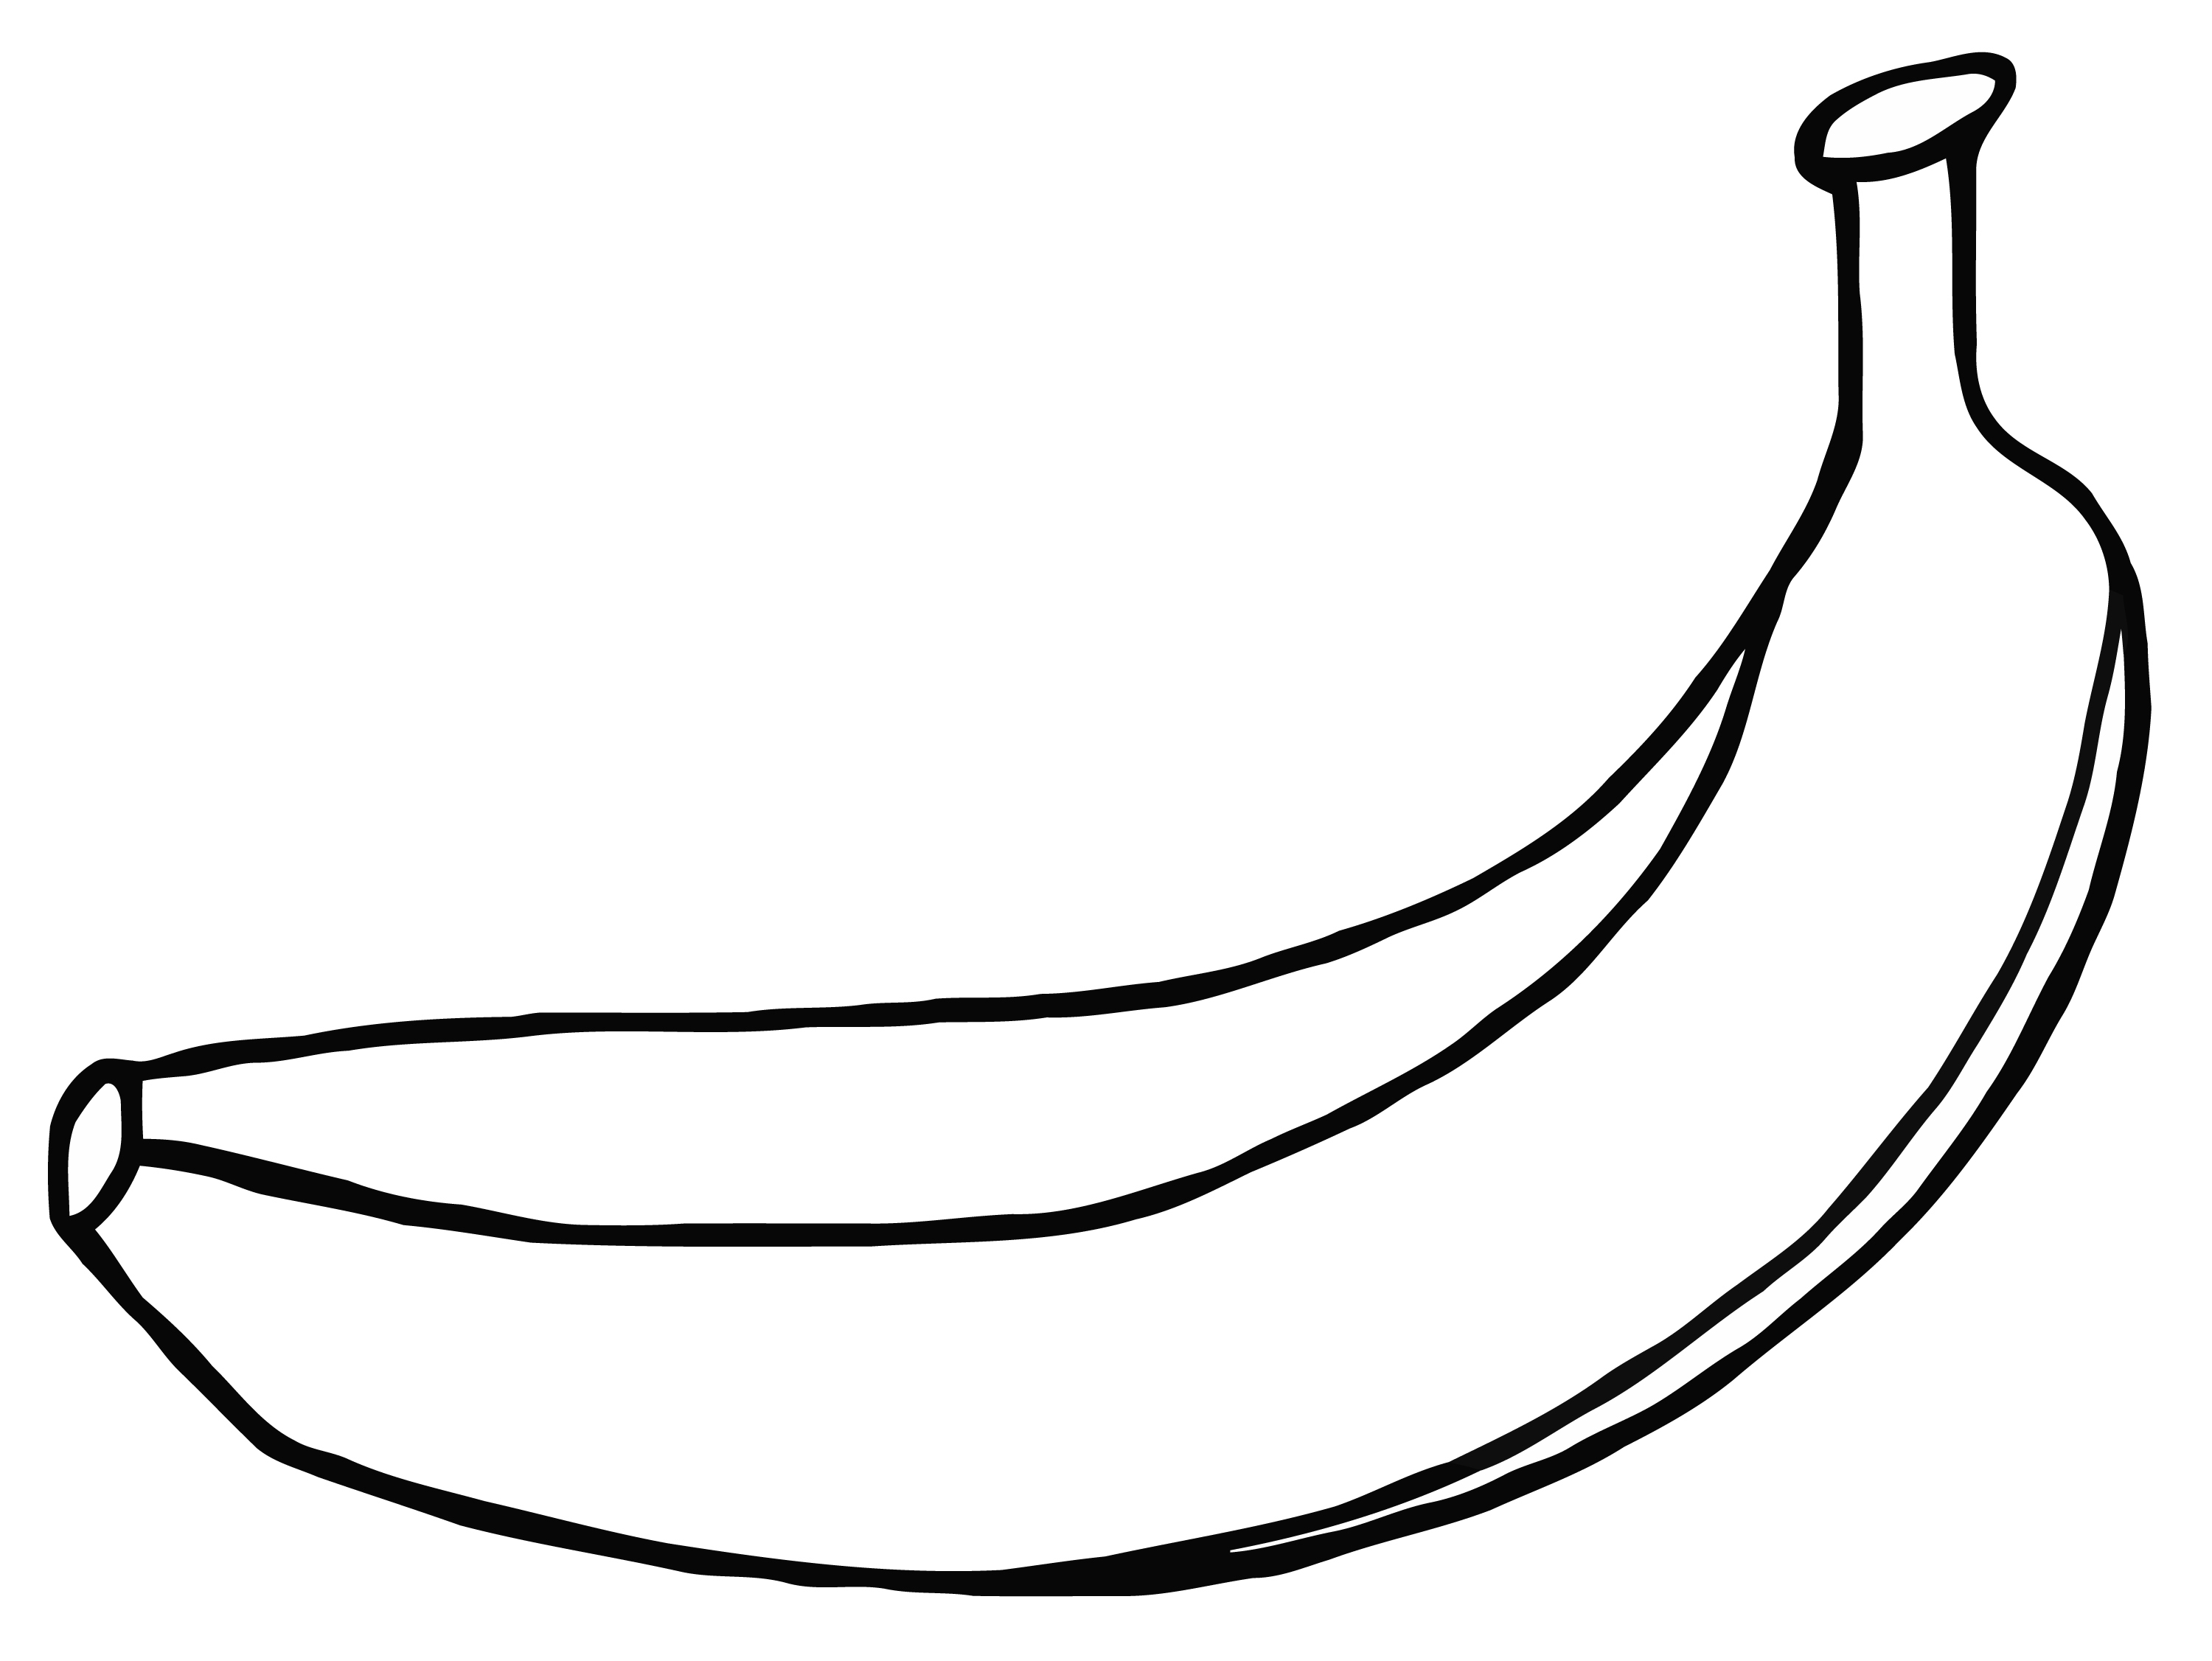 Banana Drawing Images